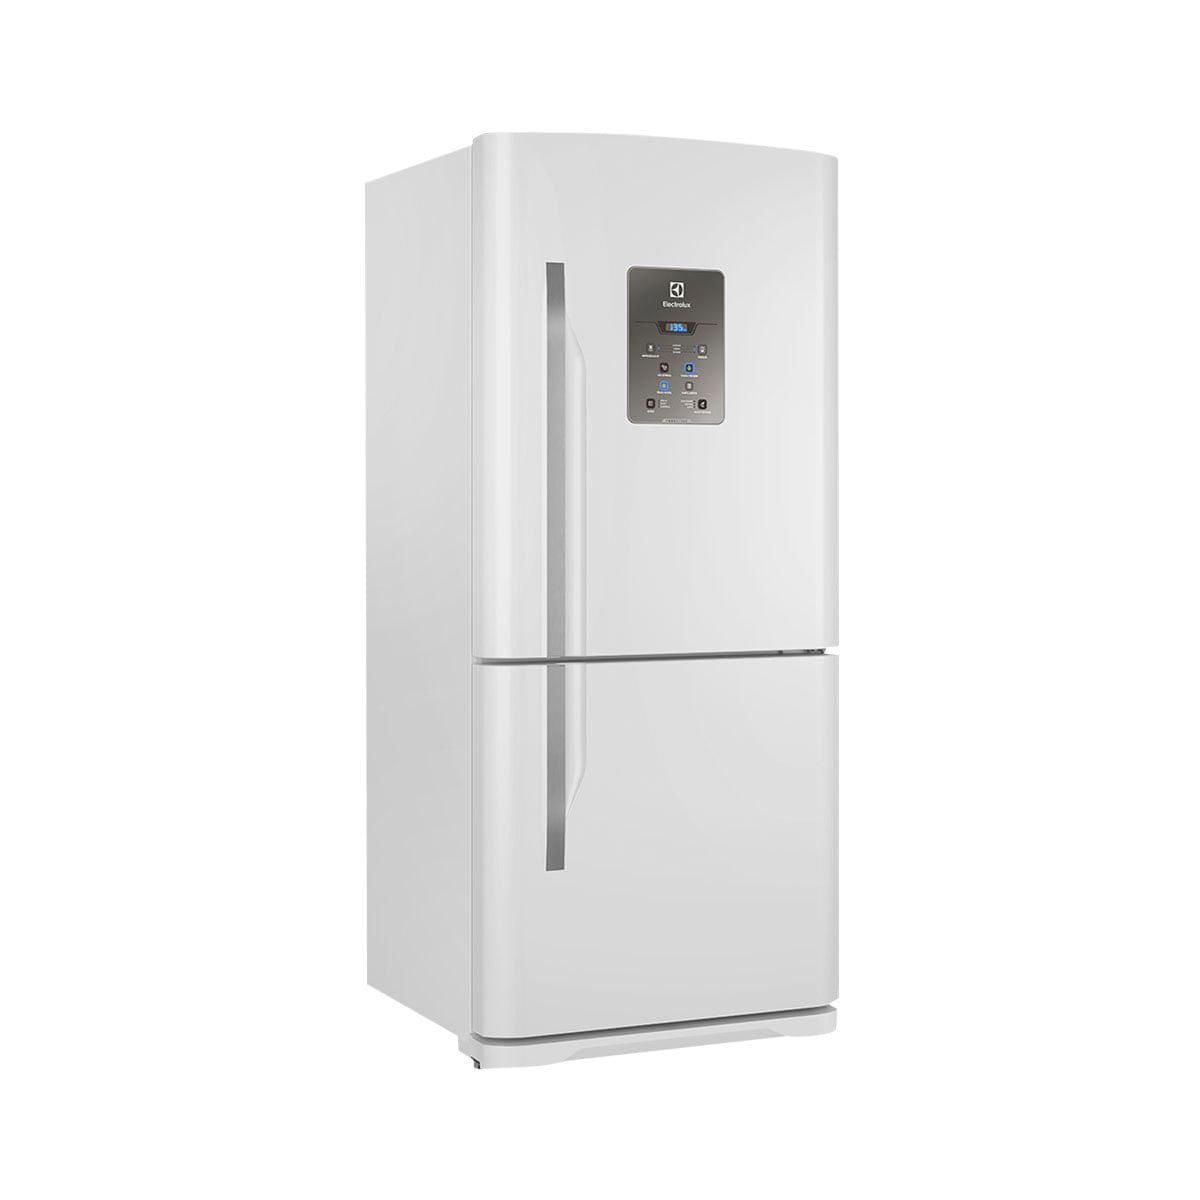 Menor preço em Geladeira Electrolux Degelo Automático Bottom Freezer 2 Portas Inverter DB84 598 Litros Branco 110V